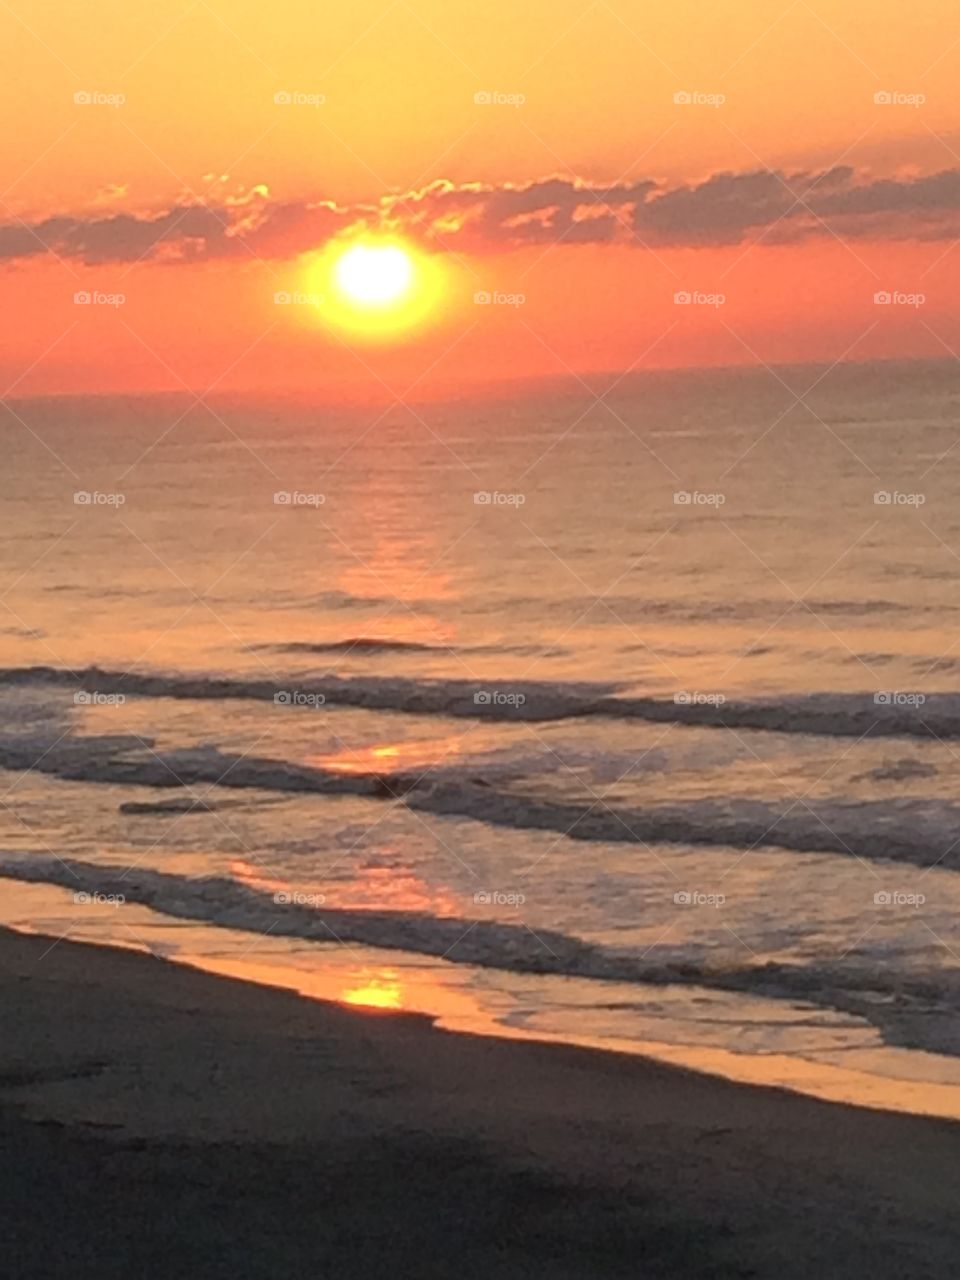 Beach sunrise up close